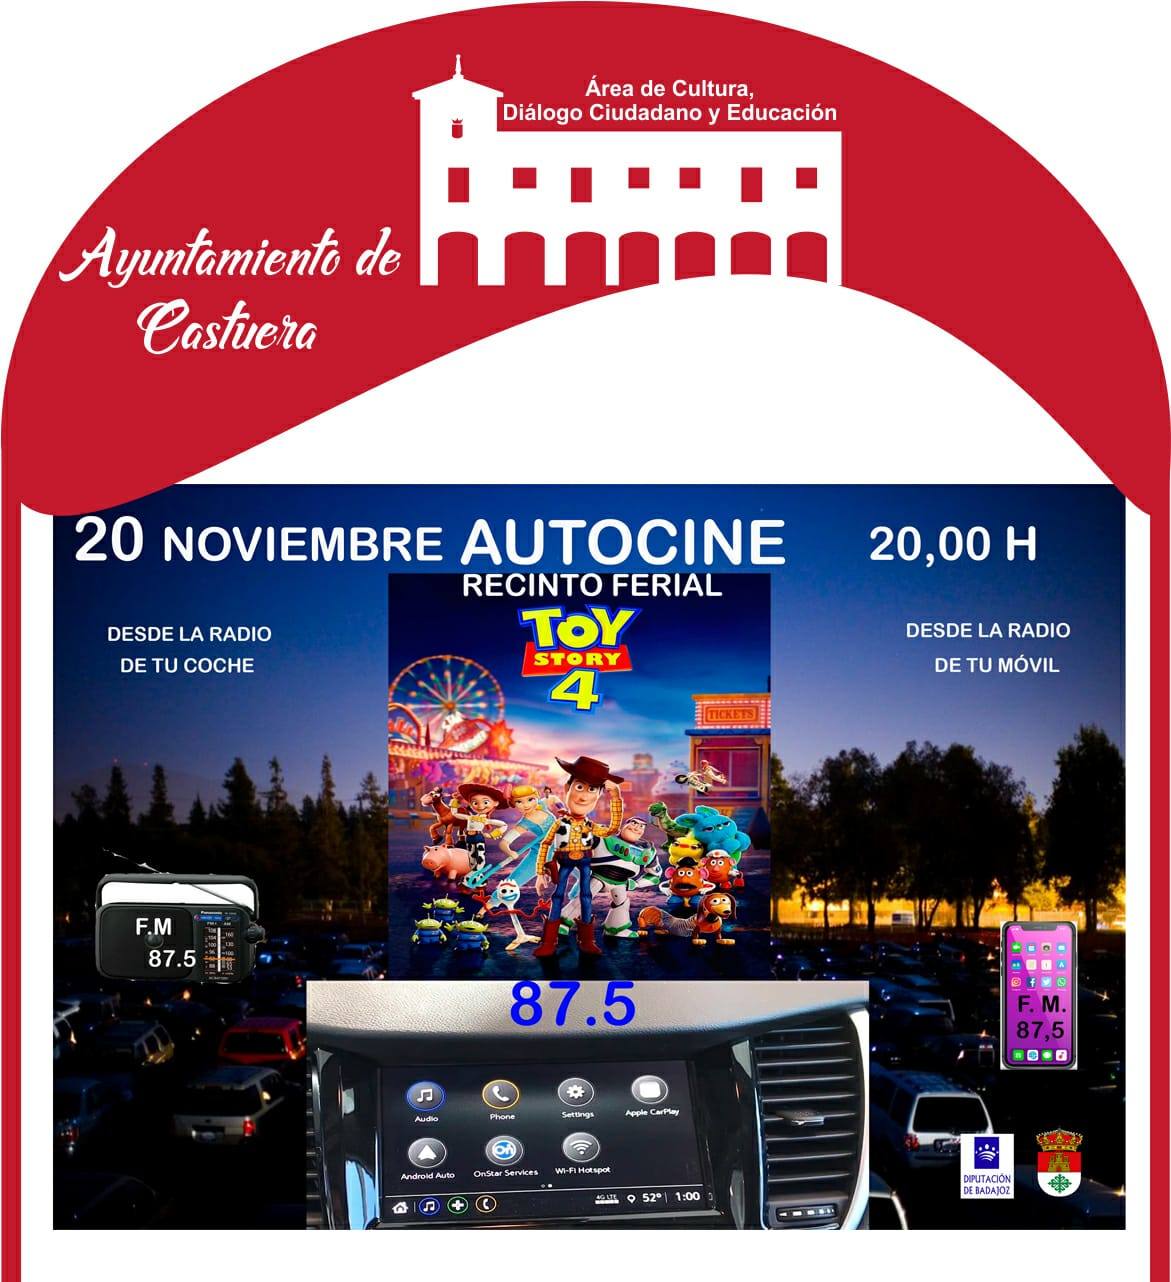 El autocine de Castuera proyecta mañana viernes 20 de noviembre 'Toy Story 4'